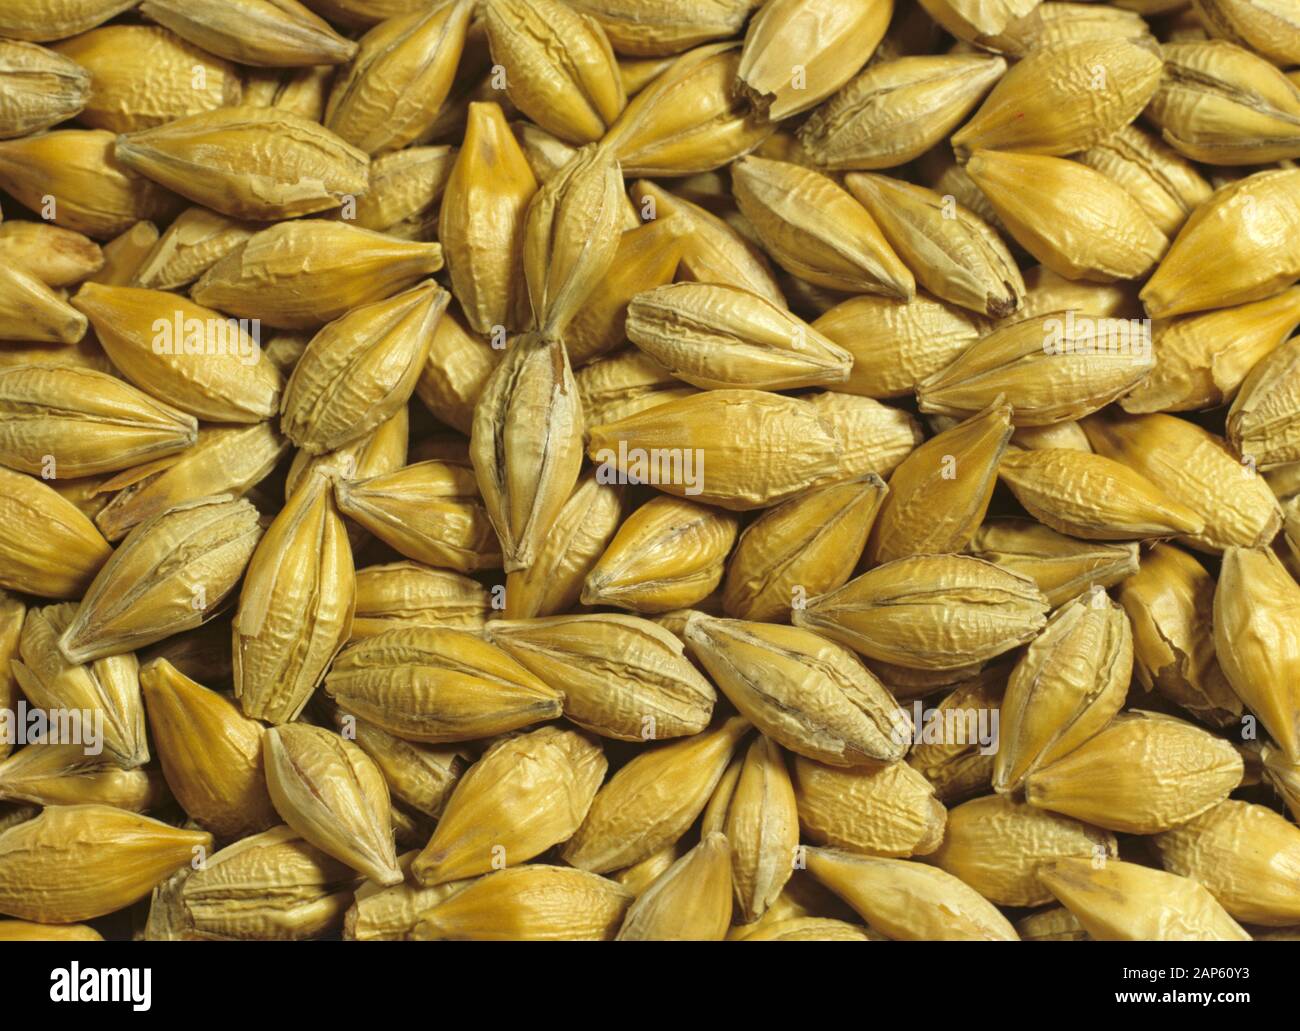 Barley grain or seed, Hordeum vulgare, seeds Stock Photo